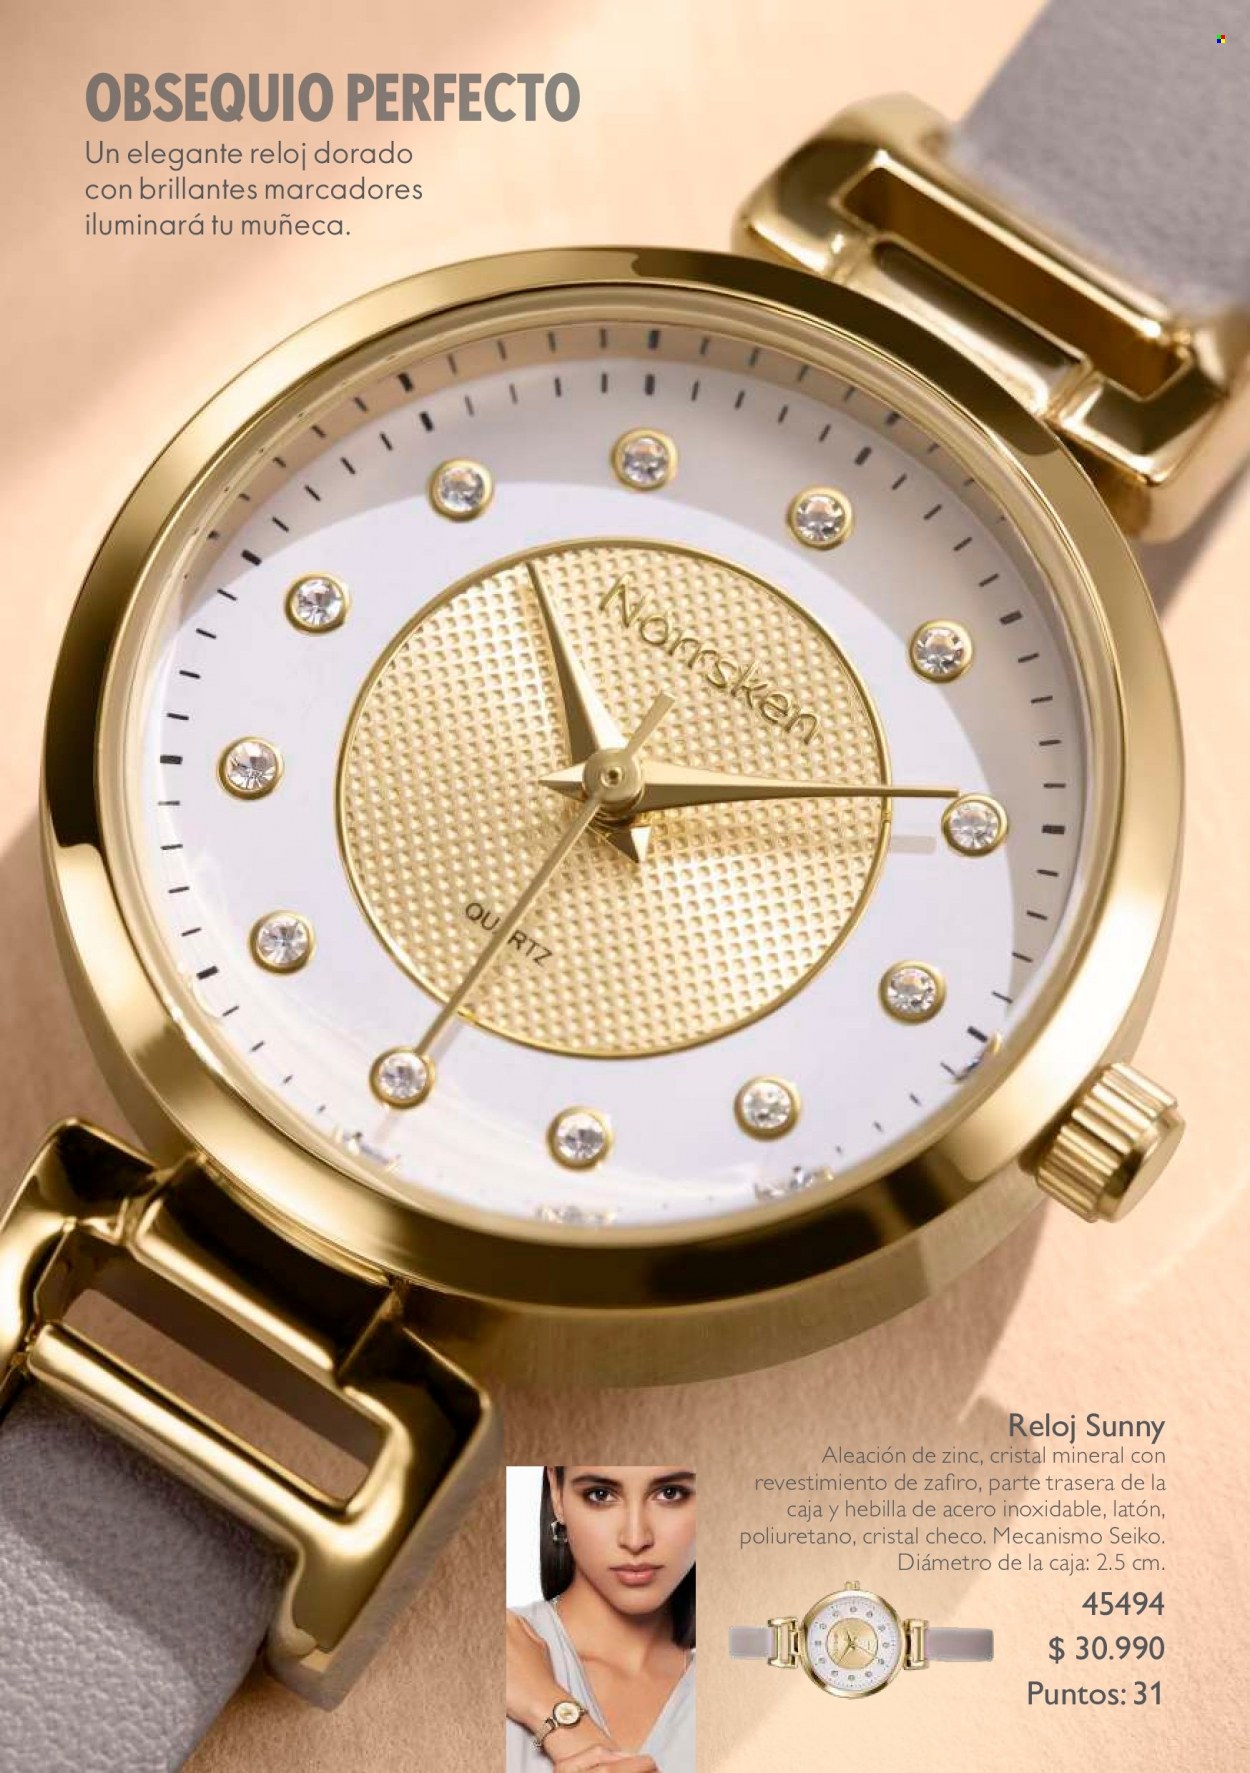 Catálogo Oriflame - Ventas - reloj. Página 13.